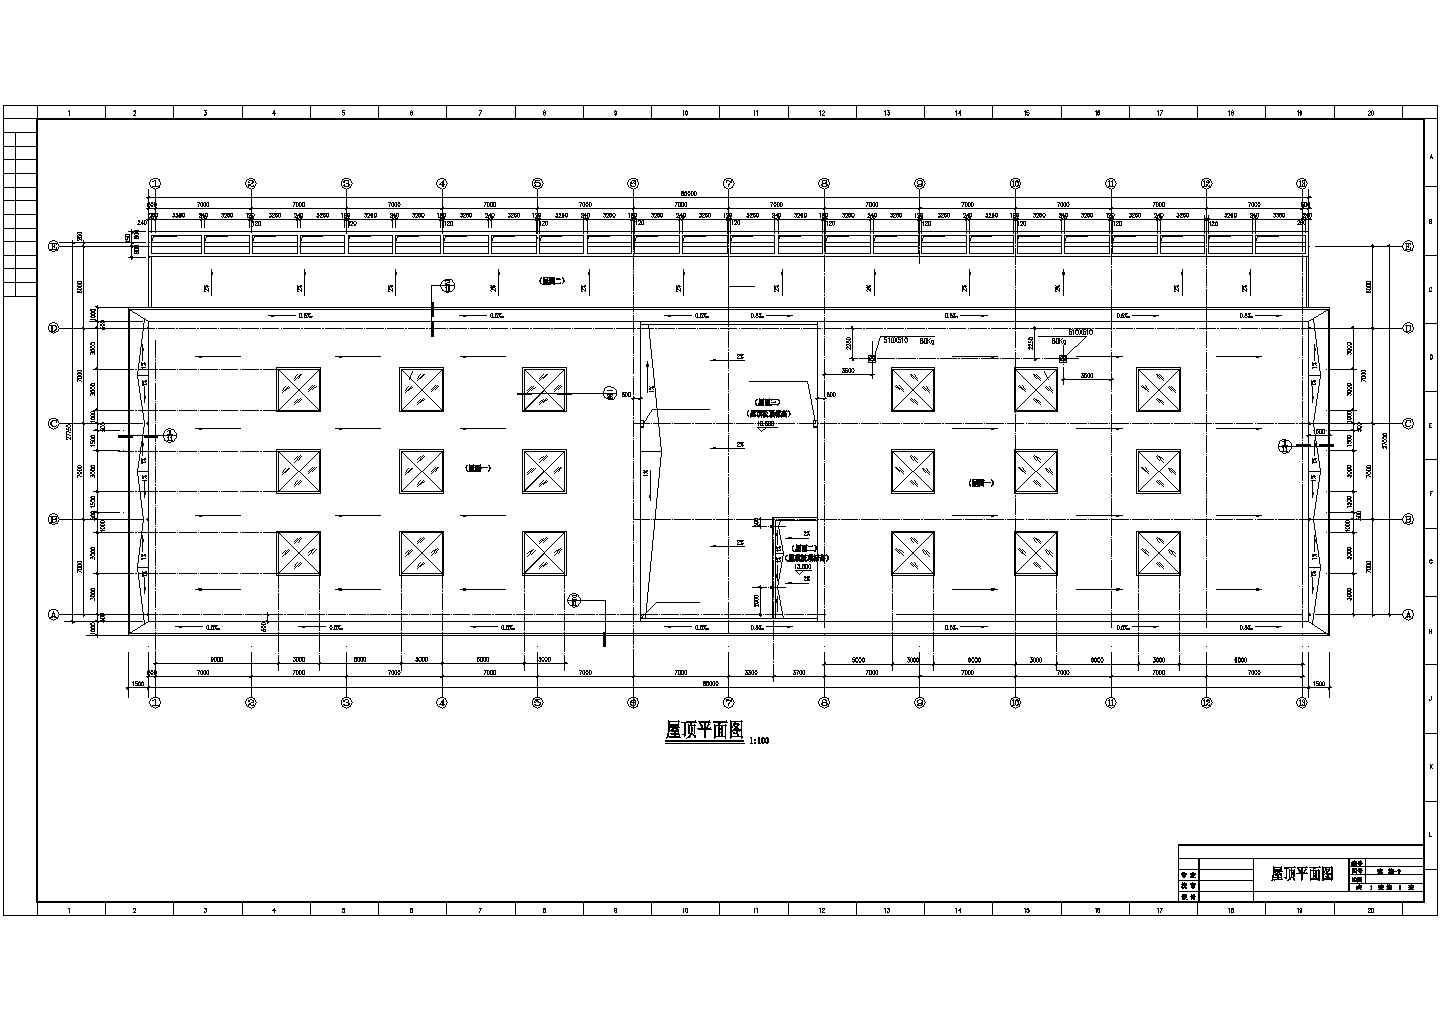 长85米 宽27.75米 3层4240.25平米框架结构体育馆建筑施工图【平立剖 楼梯 详图 马道平面布置图 说明】，共11张图纸